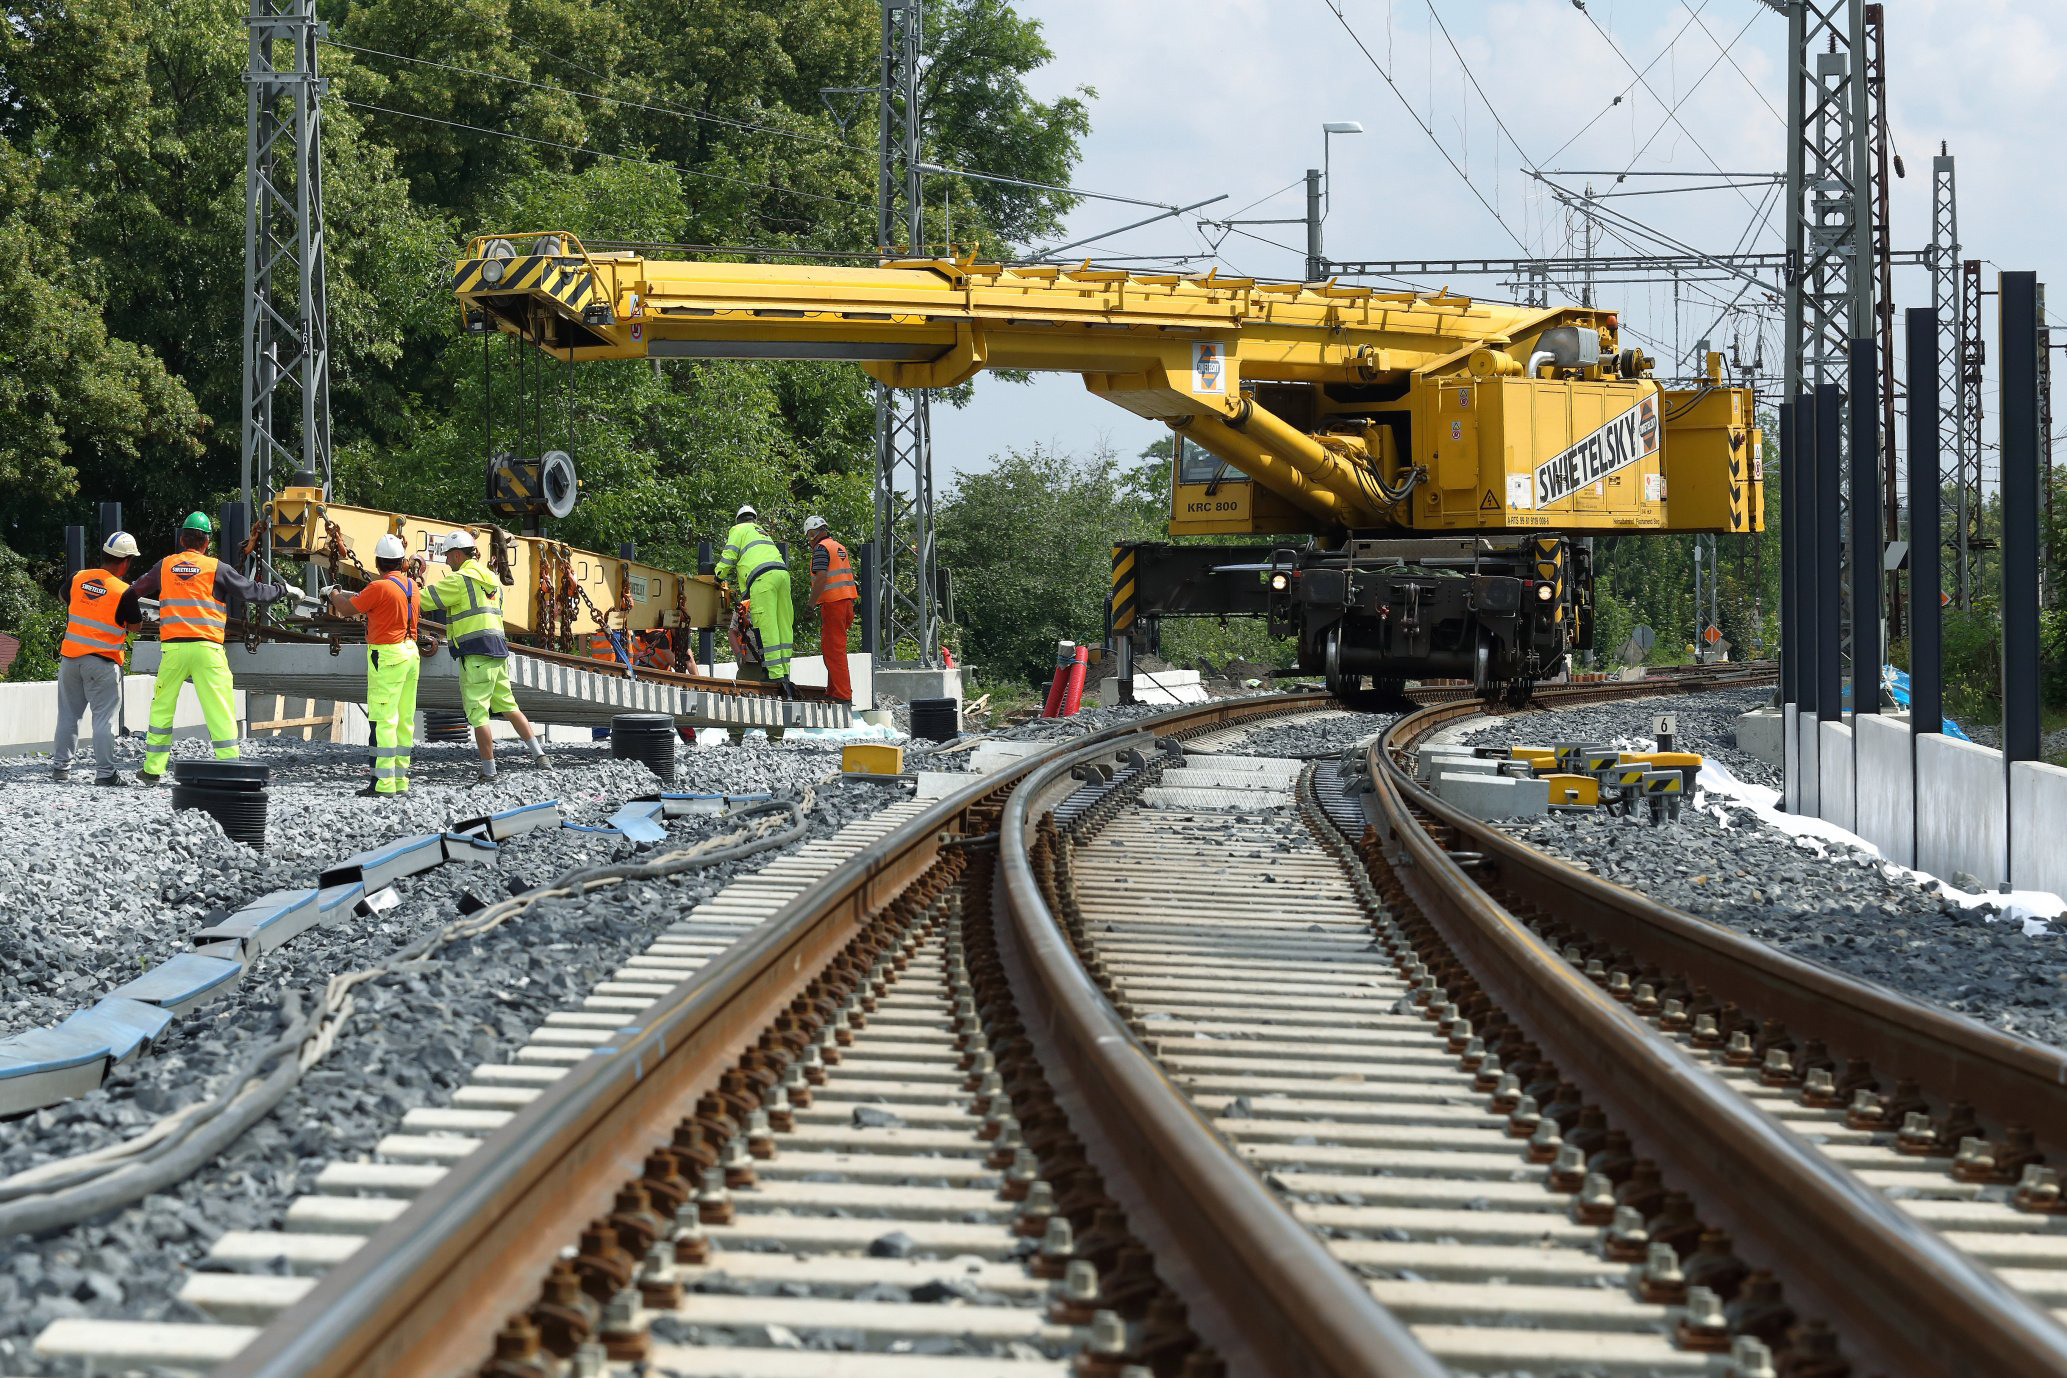 Obnova železniční stanice, Čelákovice - Jernbanearbejde